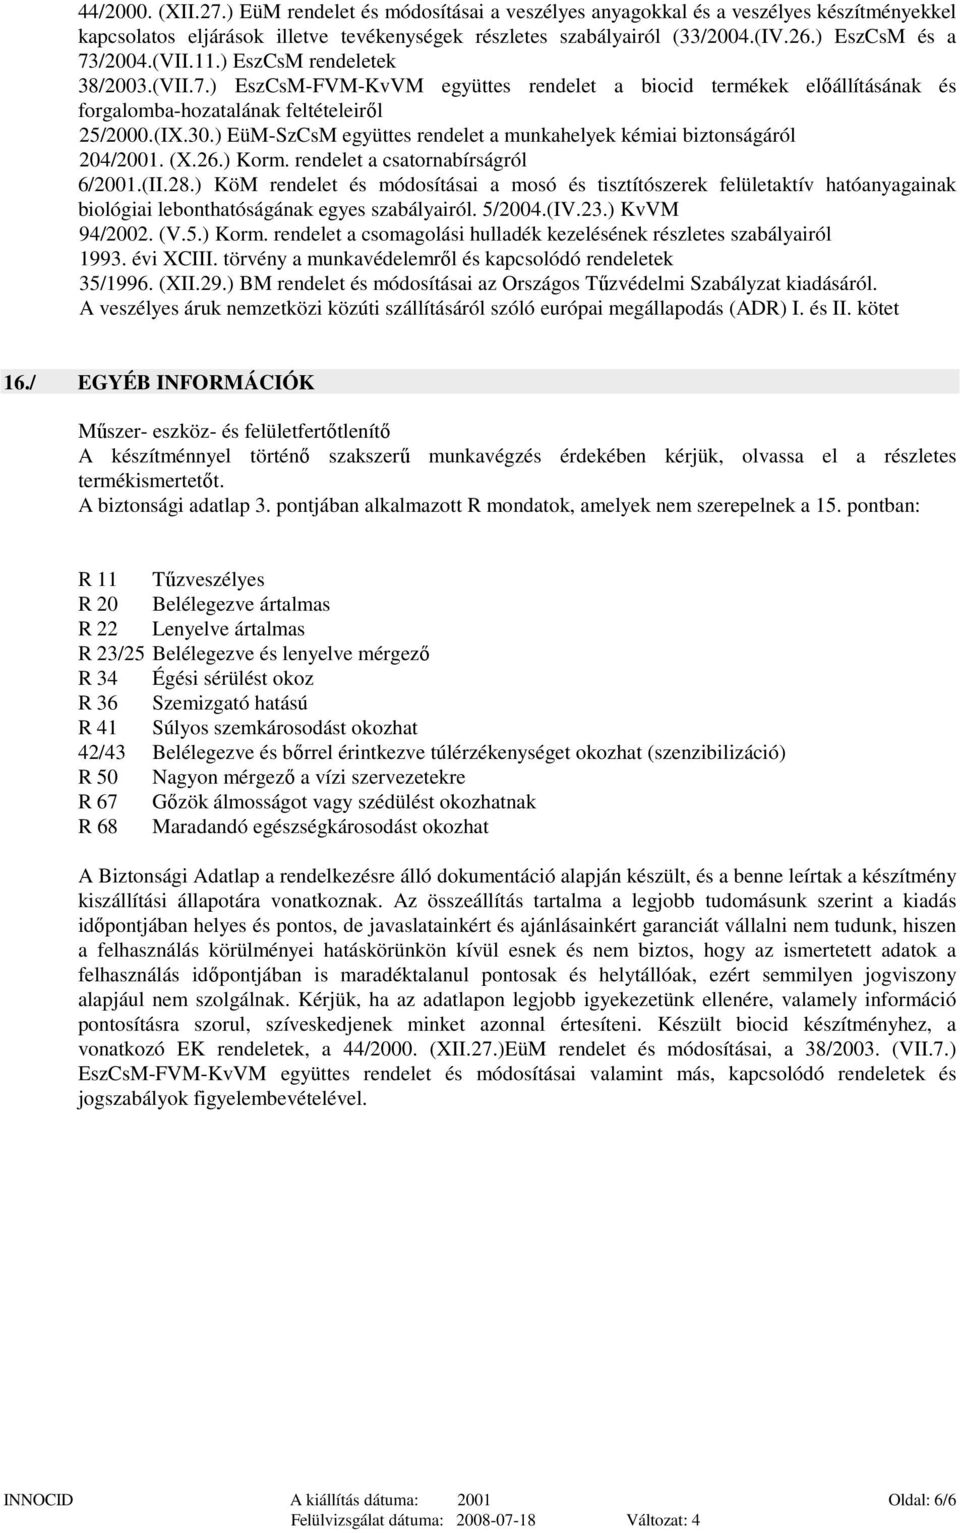 ) EüM-SzCsM együttes rendelet a munkahelyek kémiai biztonságáról 204/2001. (X.26.) Korm. rendelet a csatornabírságról 6/2001.(II.28.